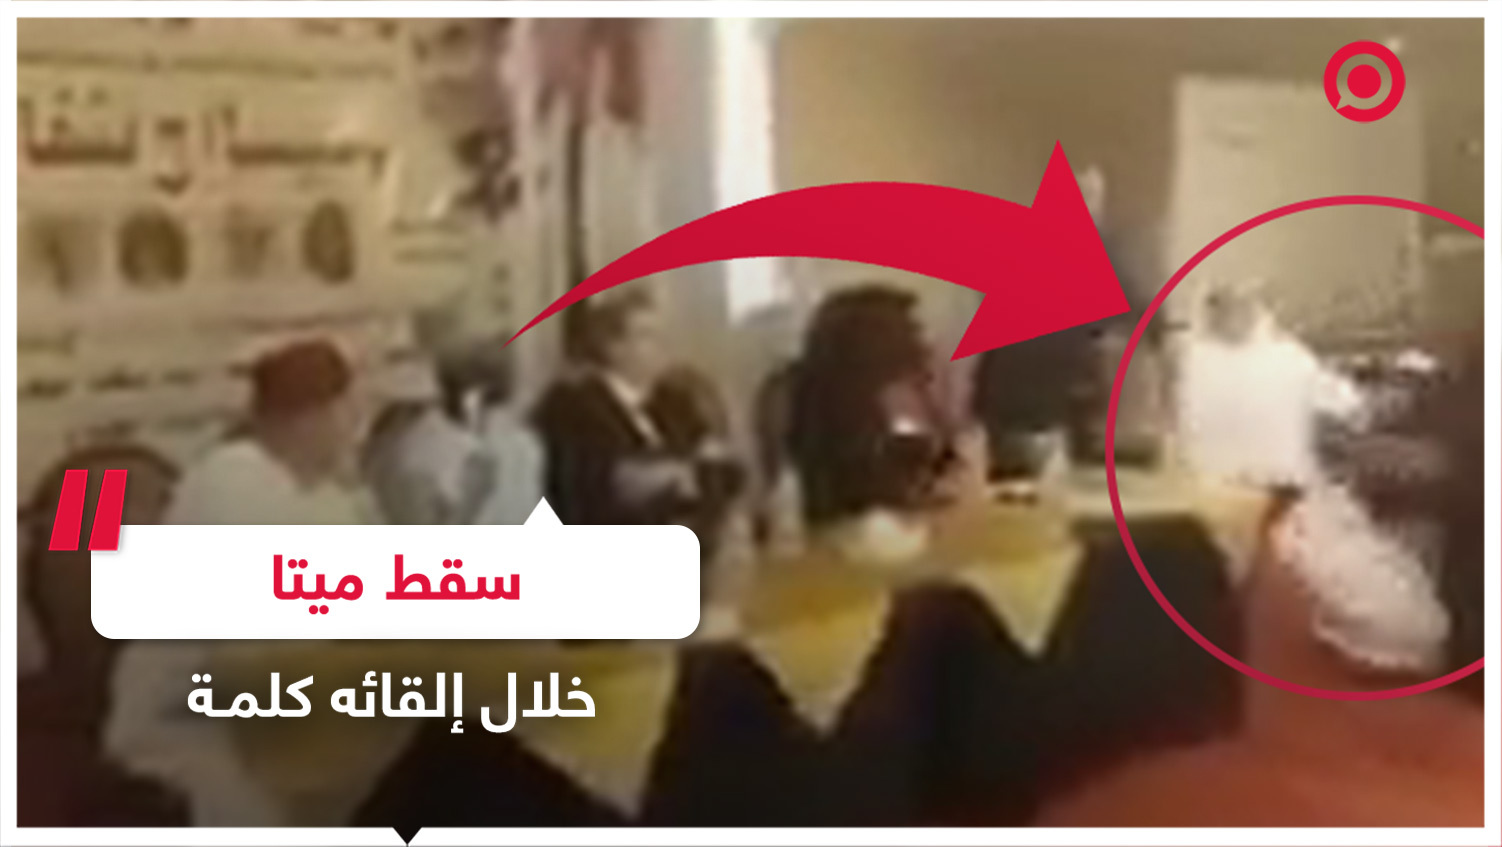 سقط ميتا خلال إلقائه كلمة مدح فيها قادة سياسيين عرب